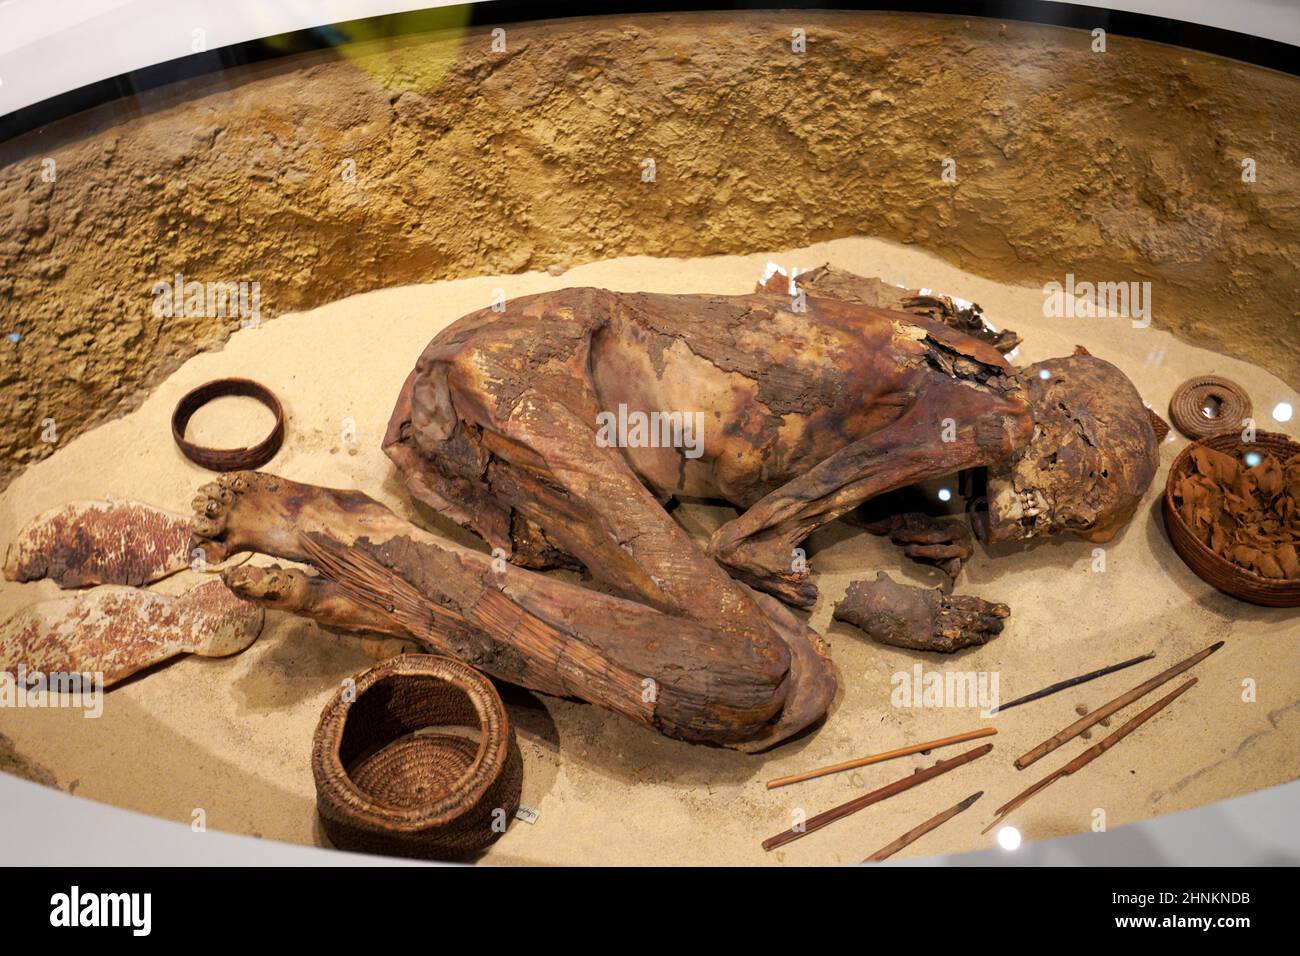 TURIN, ITALIE - 19 AOÛT 2021 : momie en position fœtale.Momification d'un corps pendant la civilisation égyptienne, Musée égyptien de Turin, Italie Banque D'Images